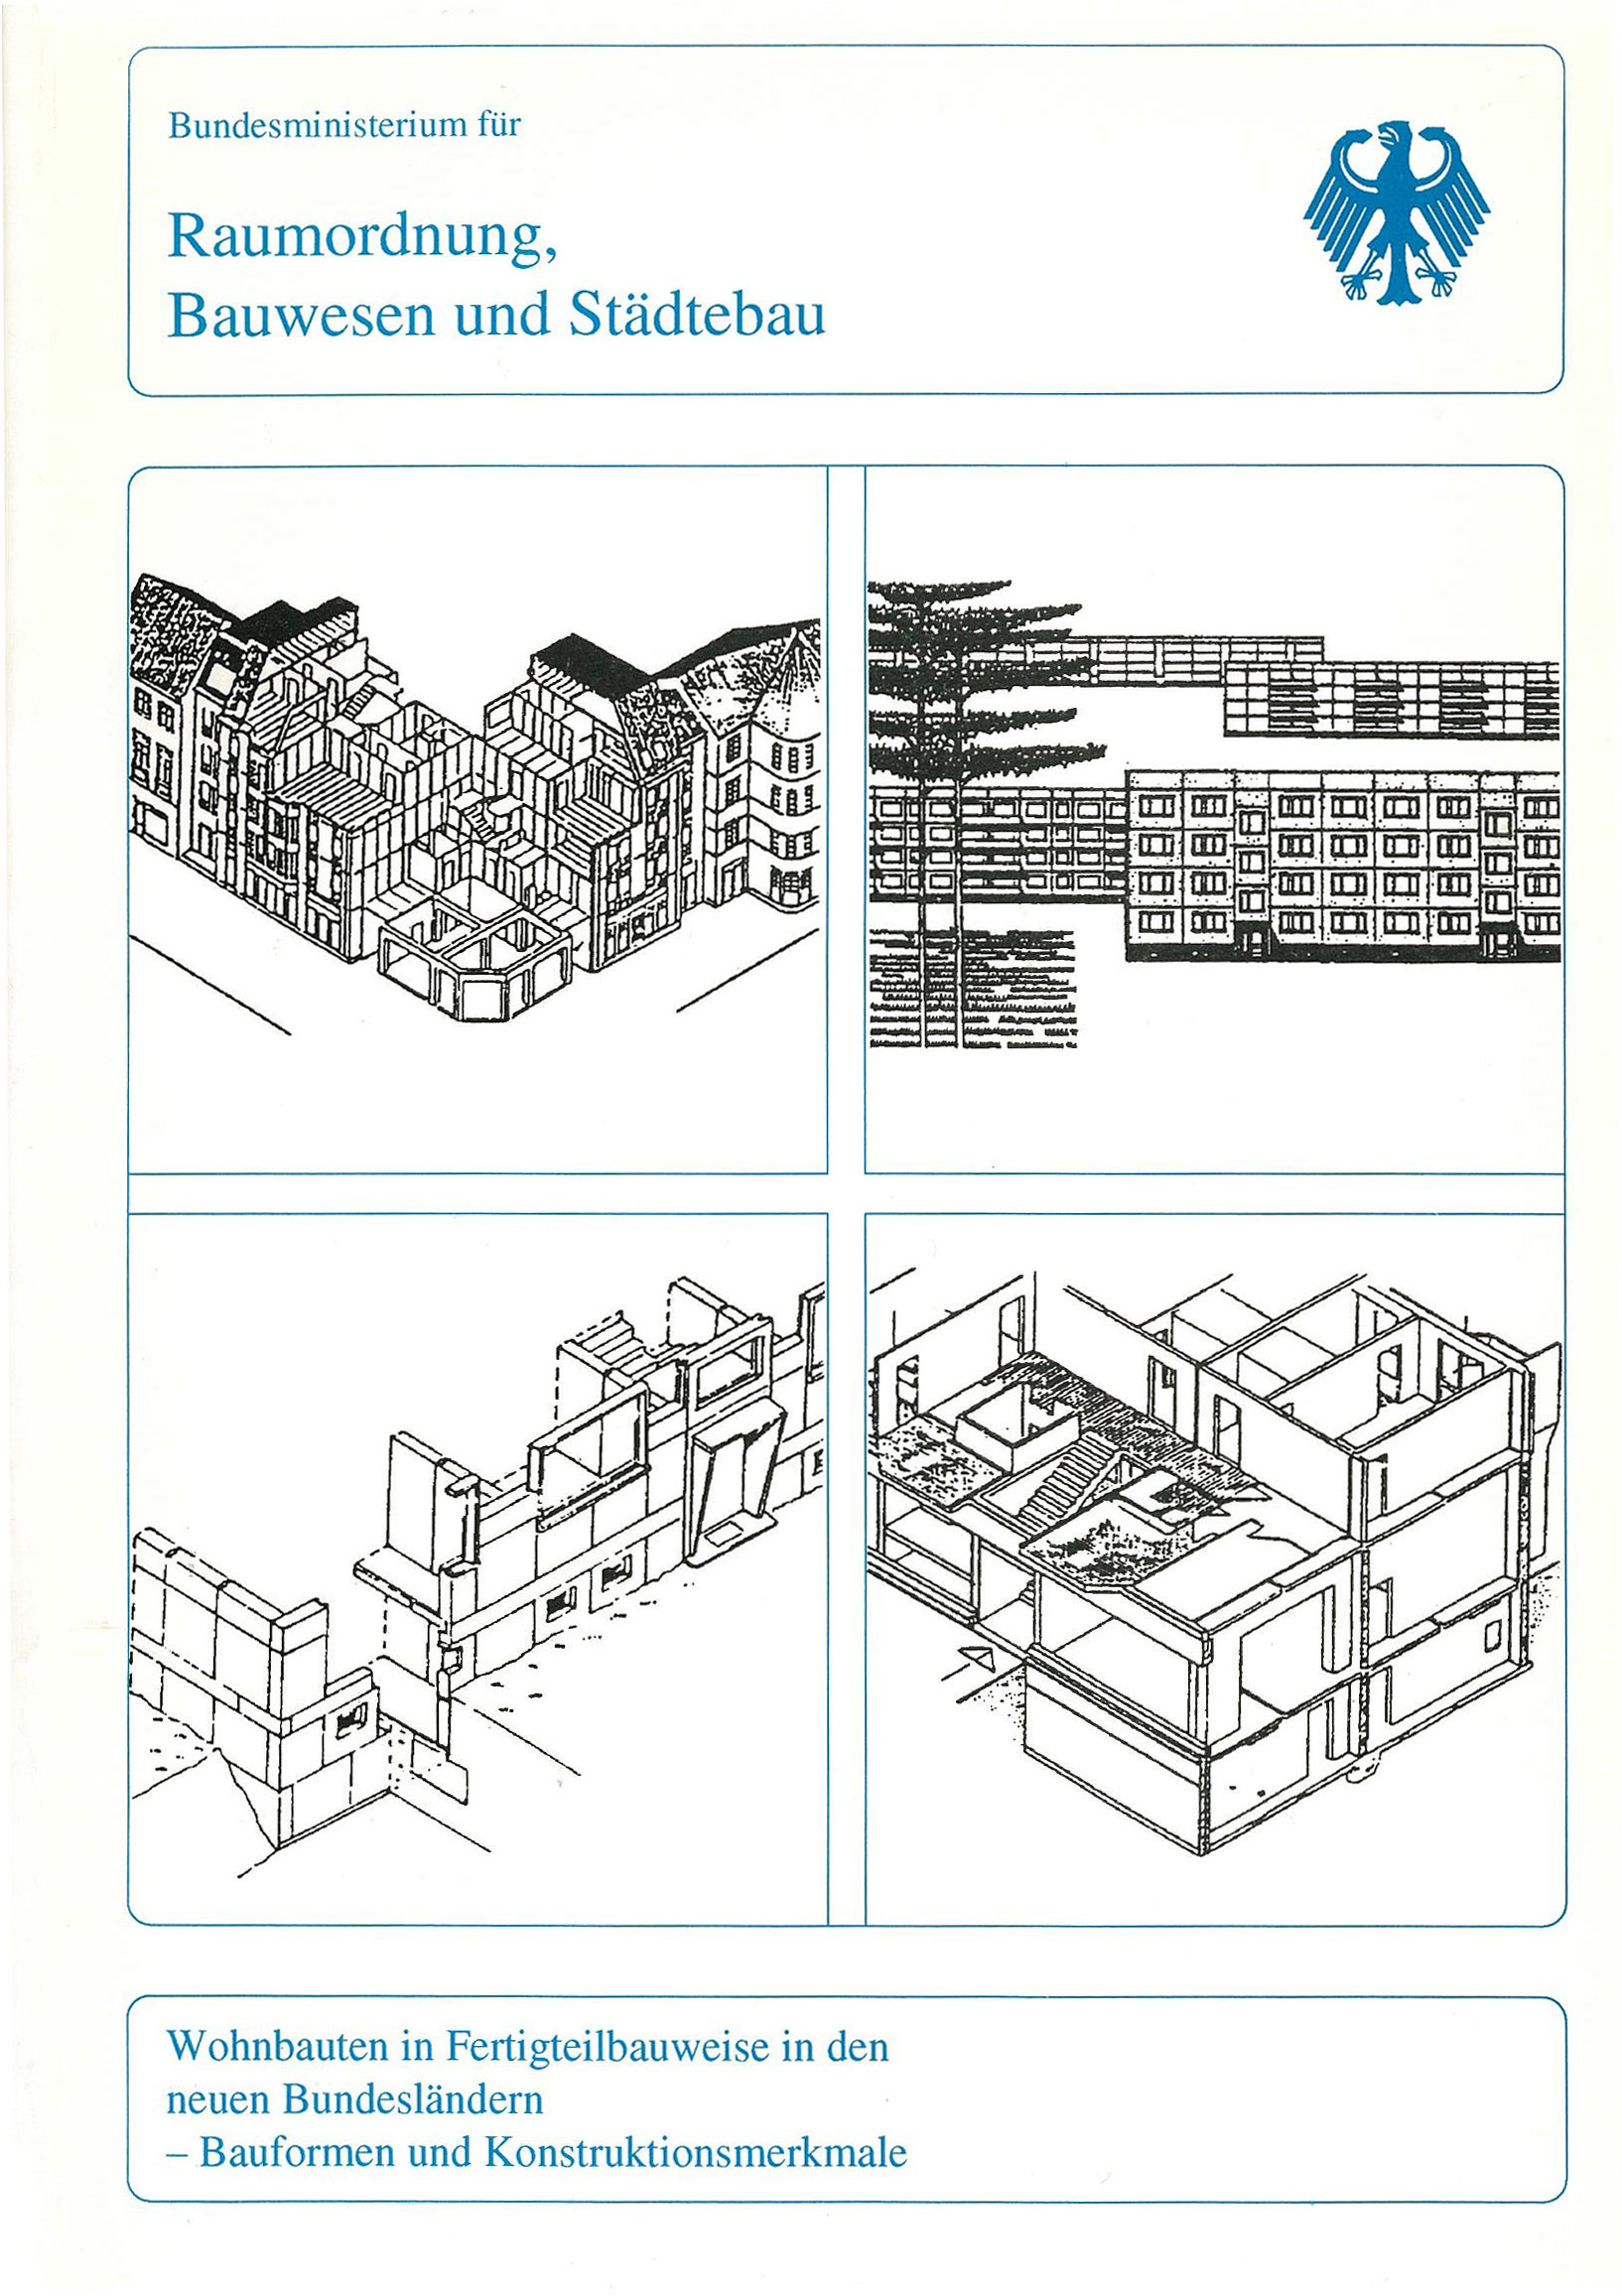 Wohnbauten in Fertigteilbauweise in den neuen Bundeländern – Bauformen und Konstruktionsmerkmale